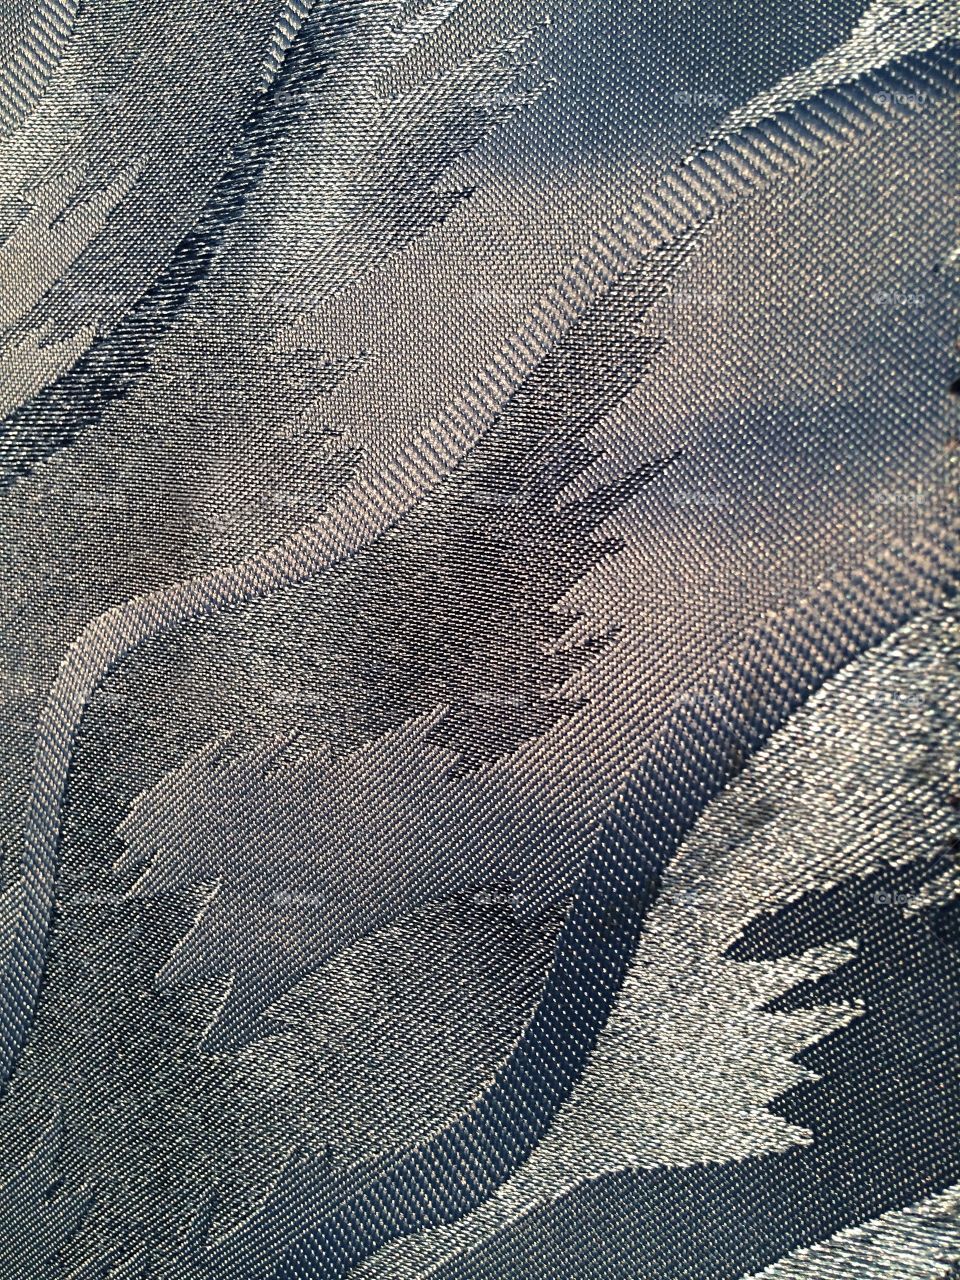 Shiny texture fabric 